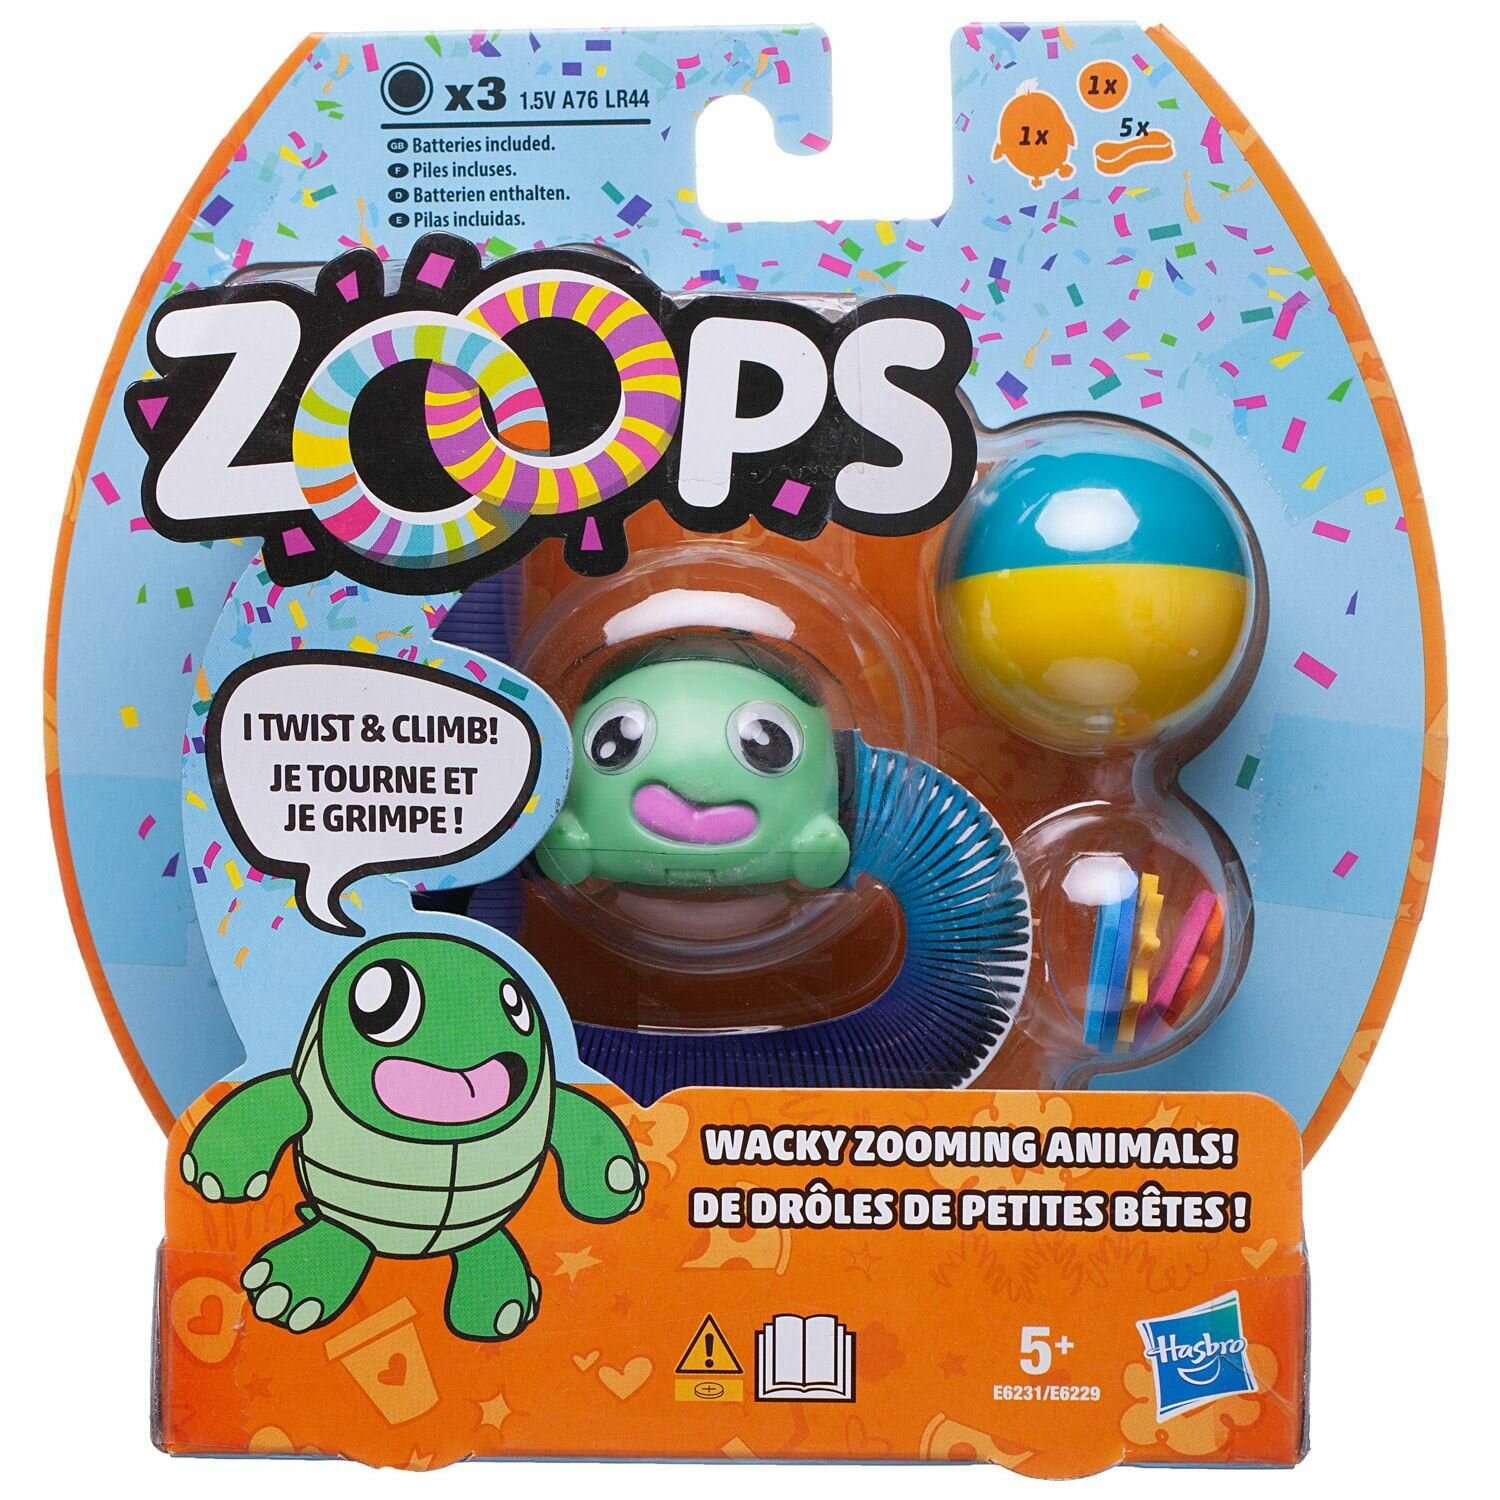 Hasbro - Игрушка браслет Zoops №2 черепашка